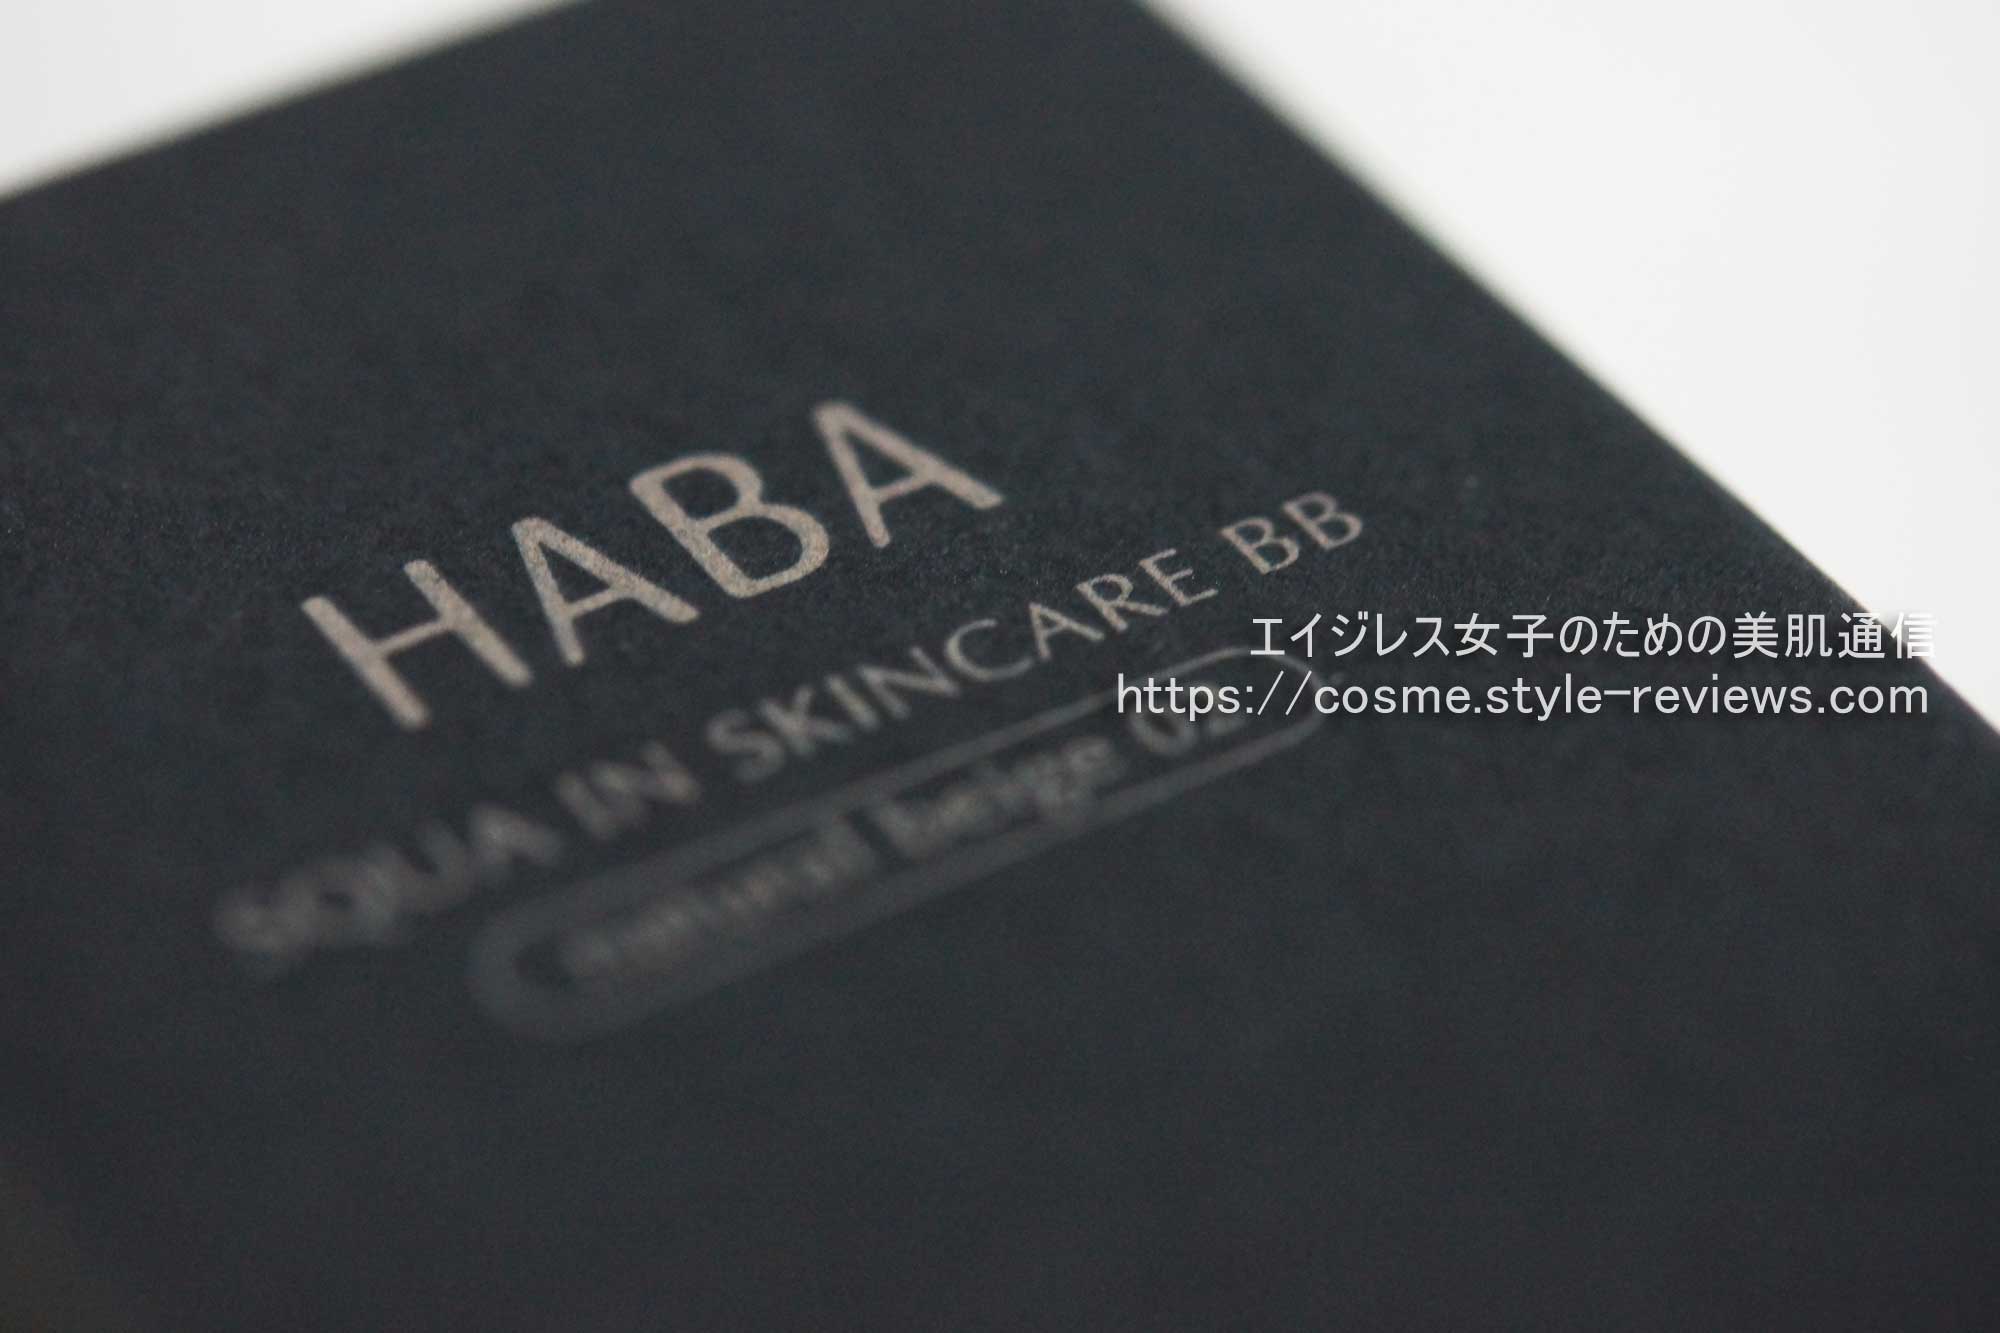 HABA無添加スキンケアメイクが8年ぶりのリニューアル